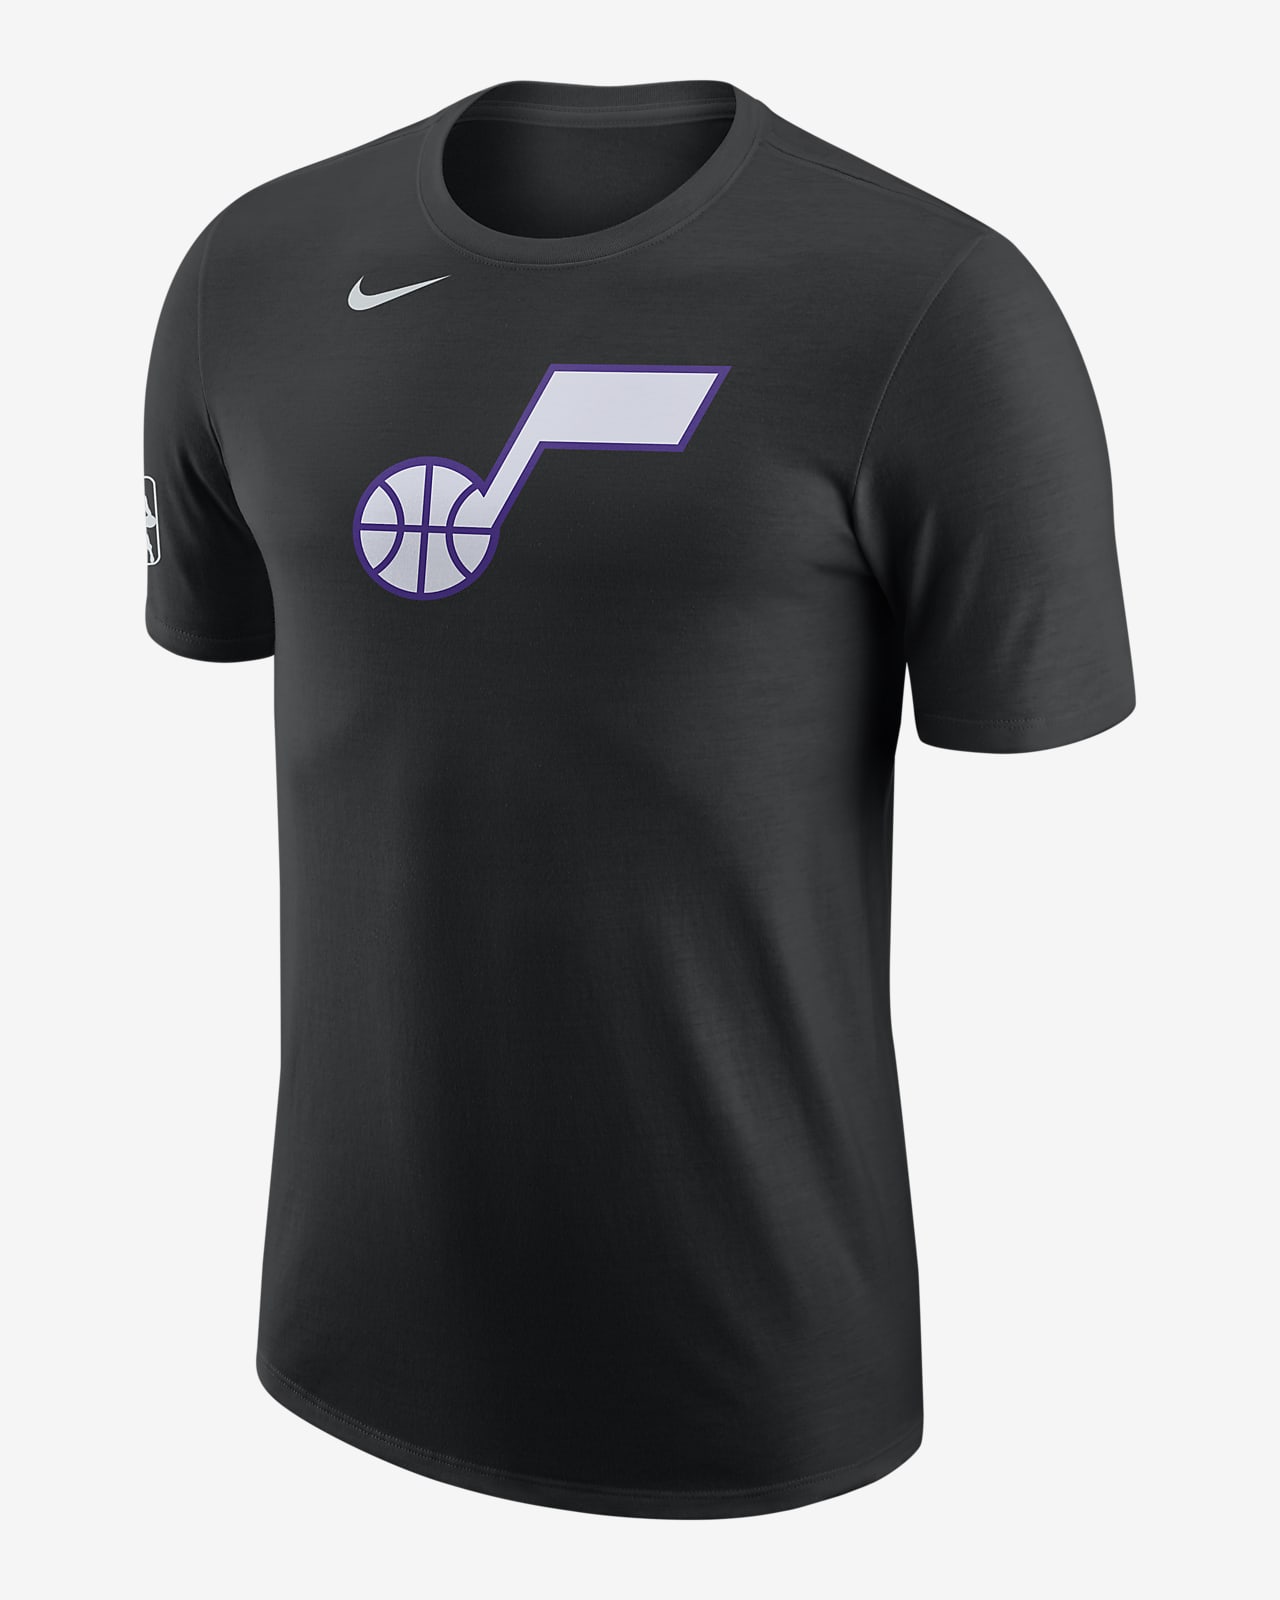 Playera Nike de la NBA para hombre Utah Jazz City Edition